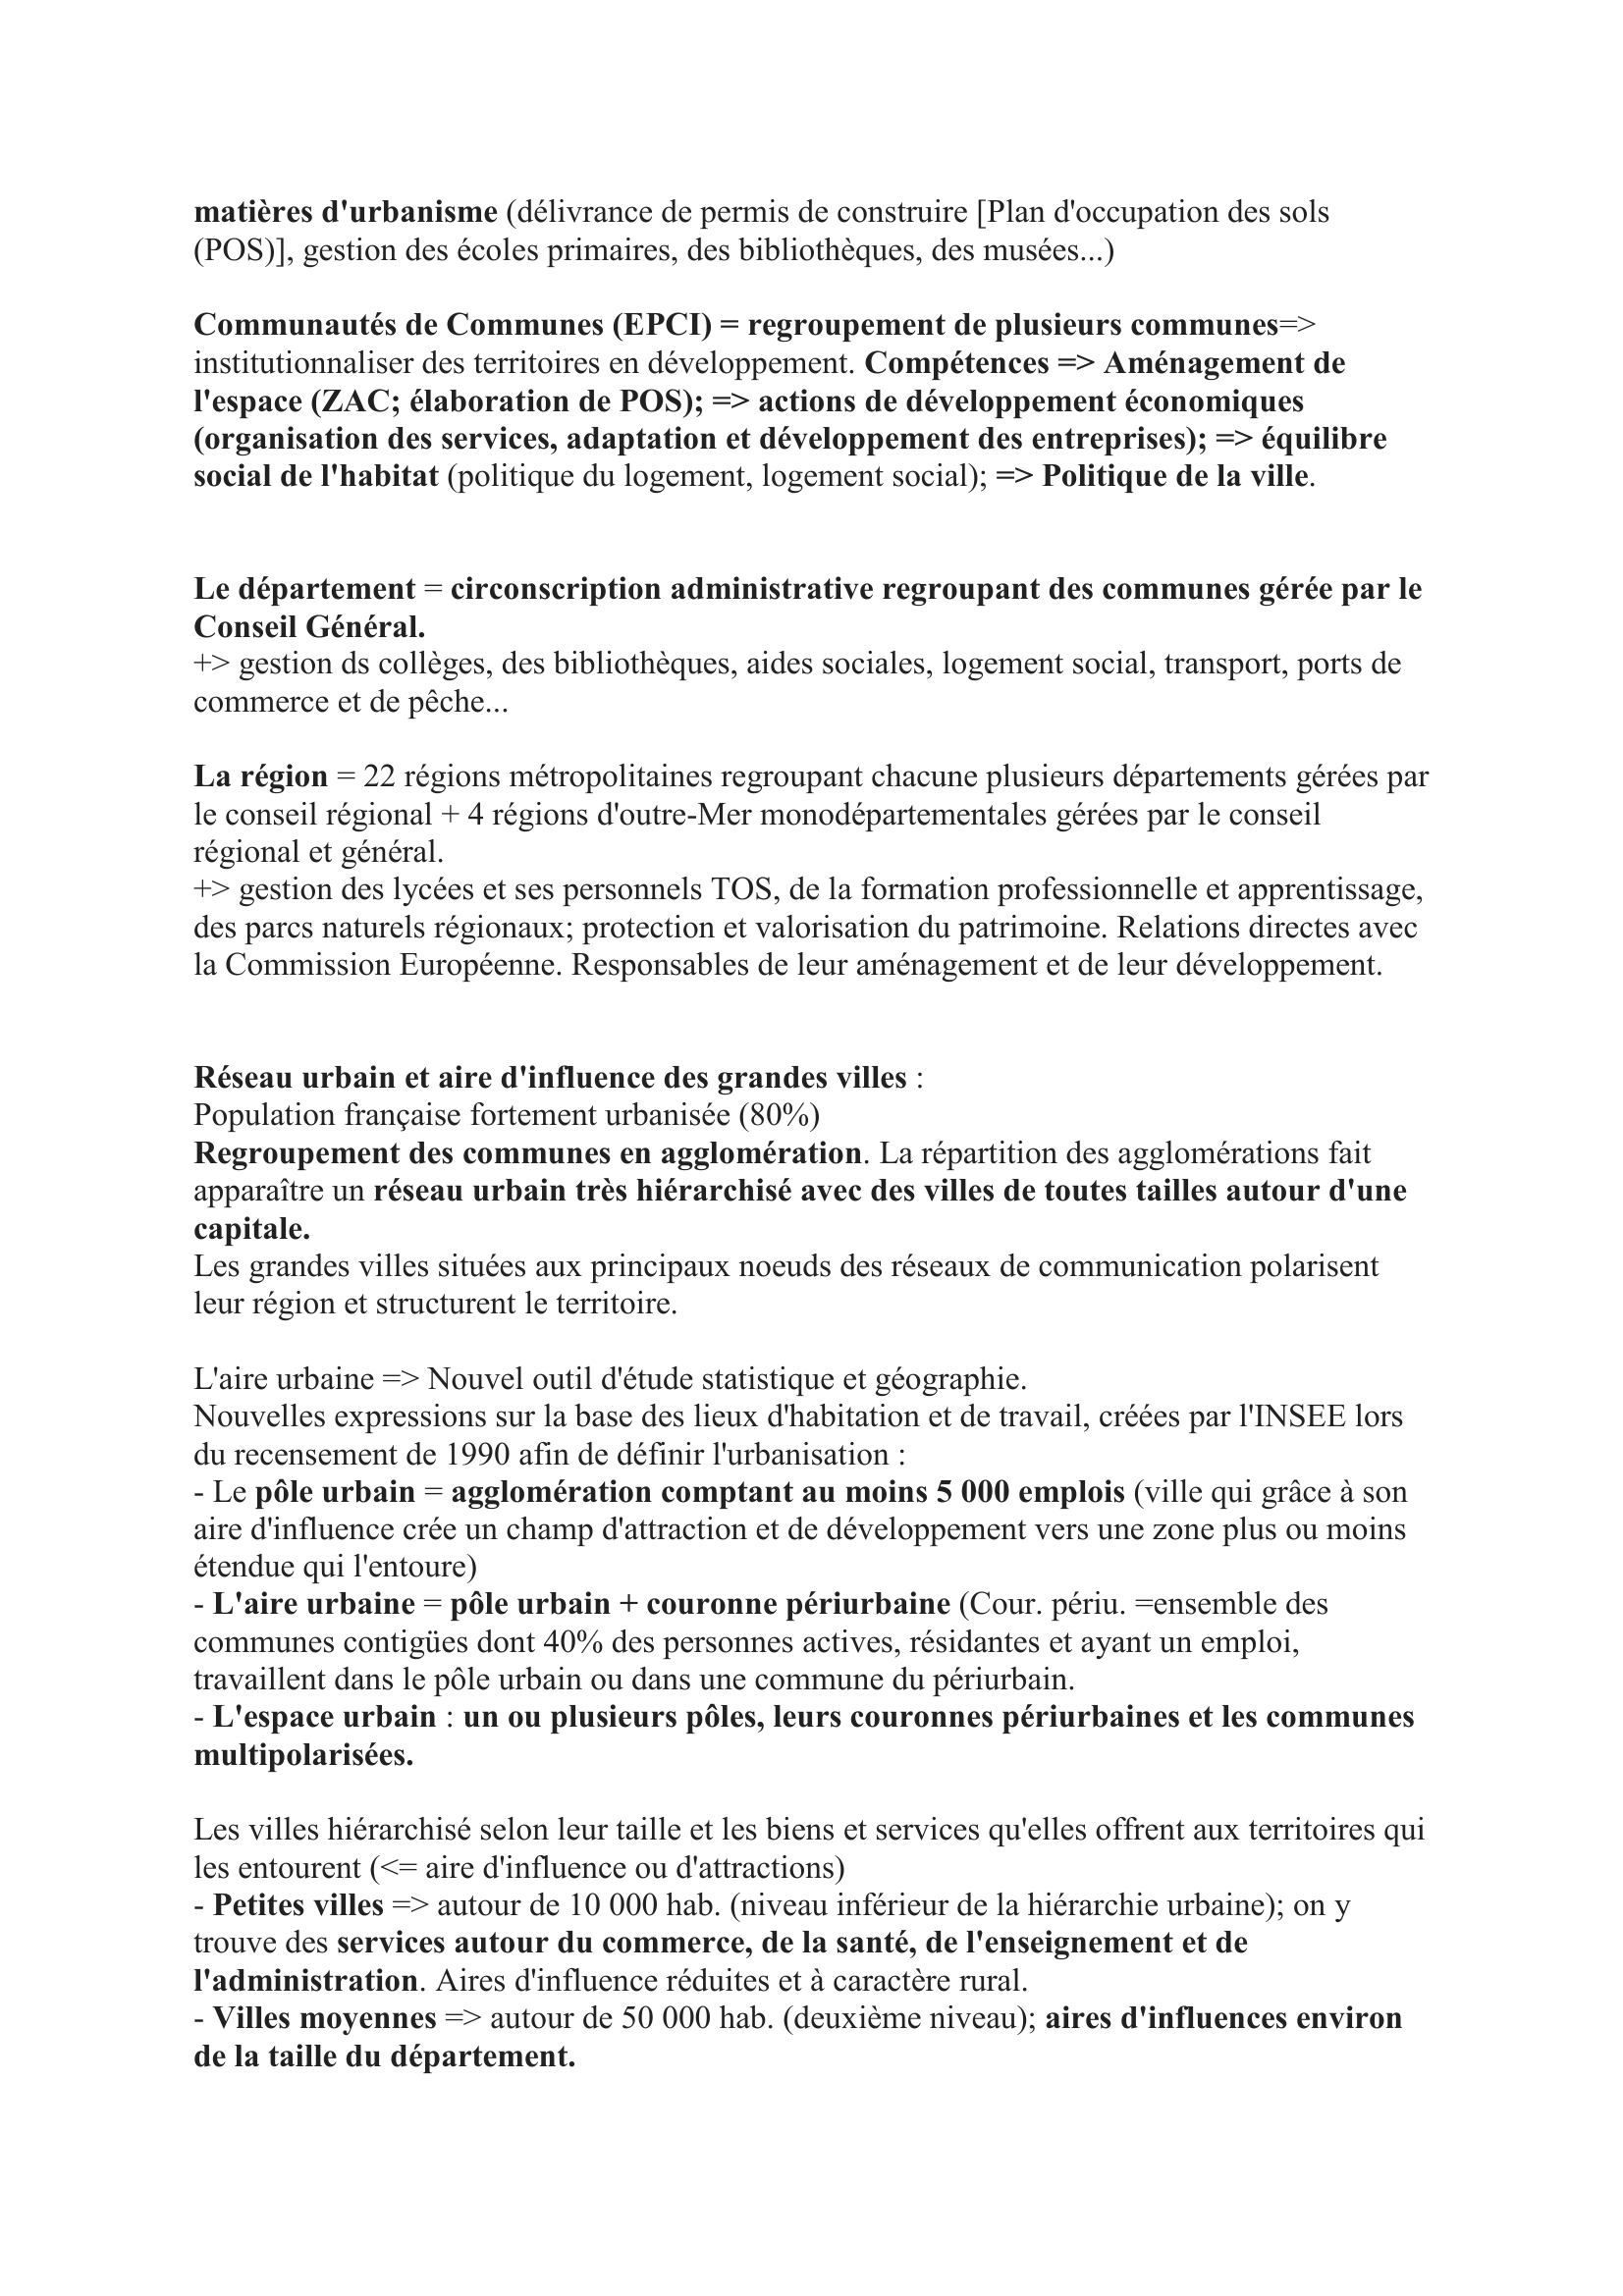 Prévisualisation du document Commune, département, région, aménagement du territoire français
Fiche composée par sylvain
sylvain.